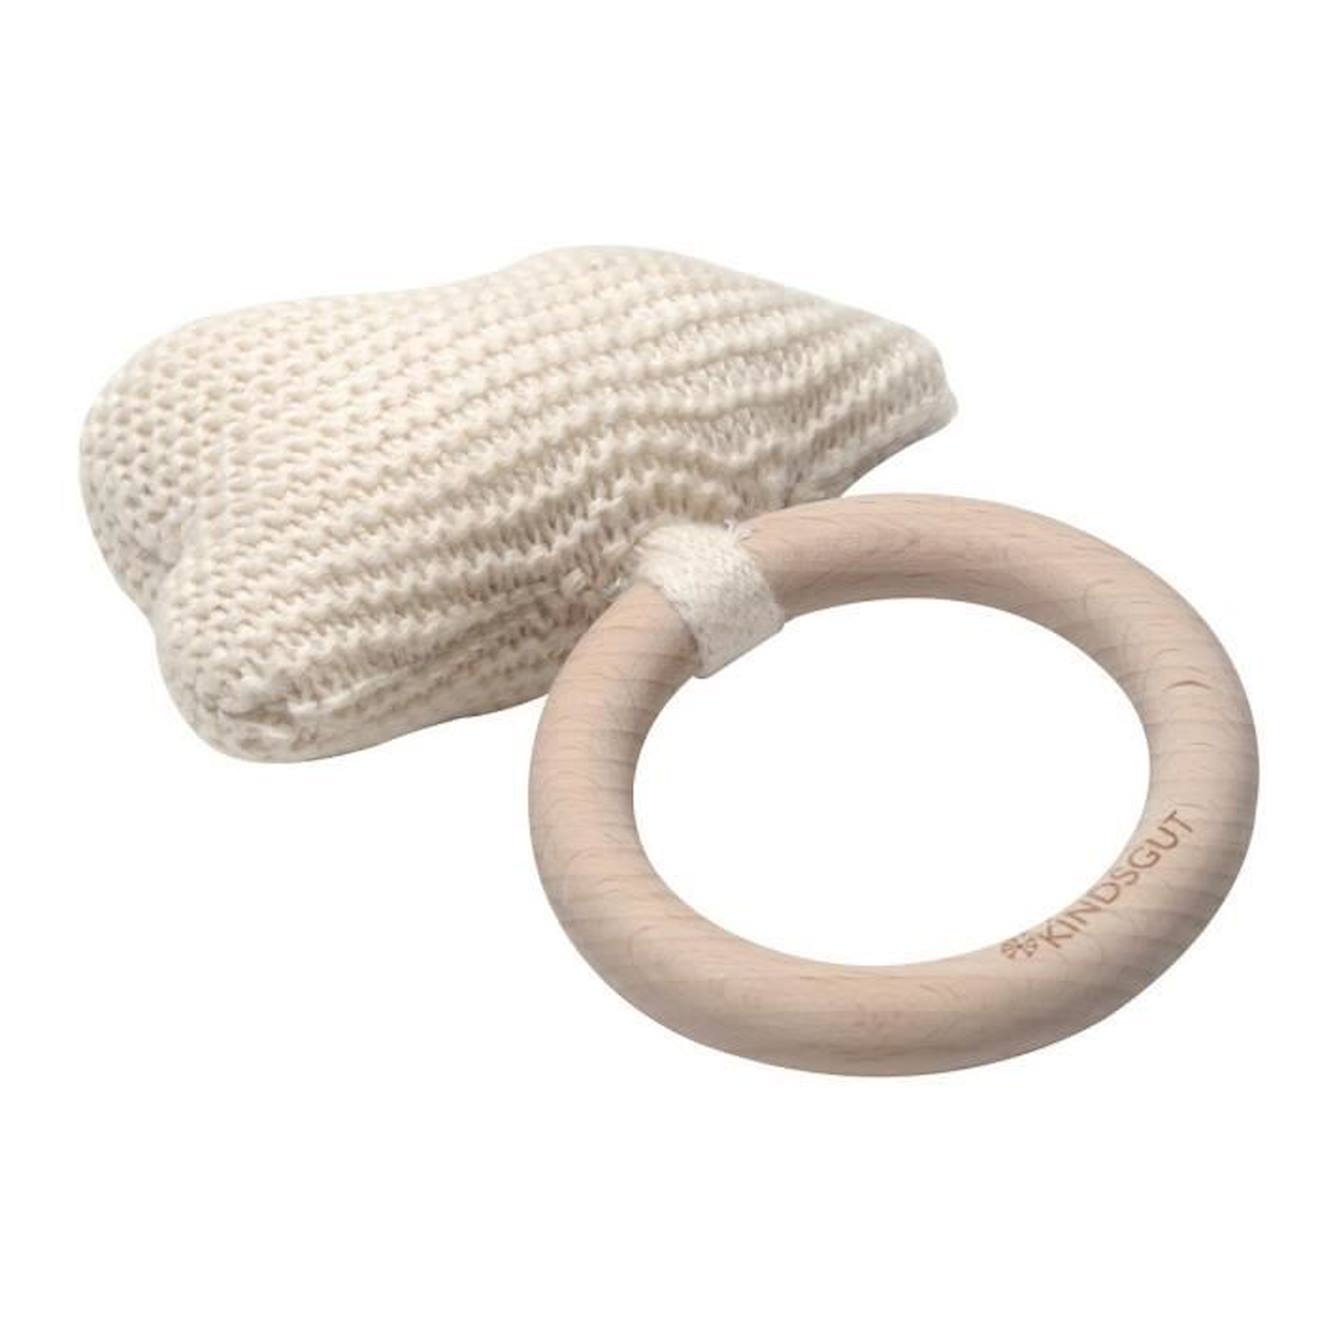 Jouet À Saisir Crochet Nuage - Kindsgut - Hochet Coton Bois - Bébé 0 Mois - Respectueux De L'environnement Blanc (Kindsgut) - Image 1